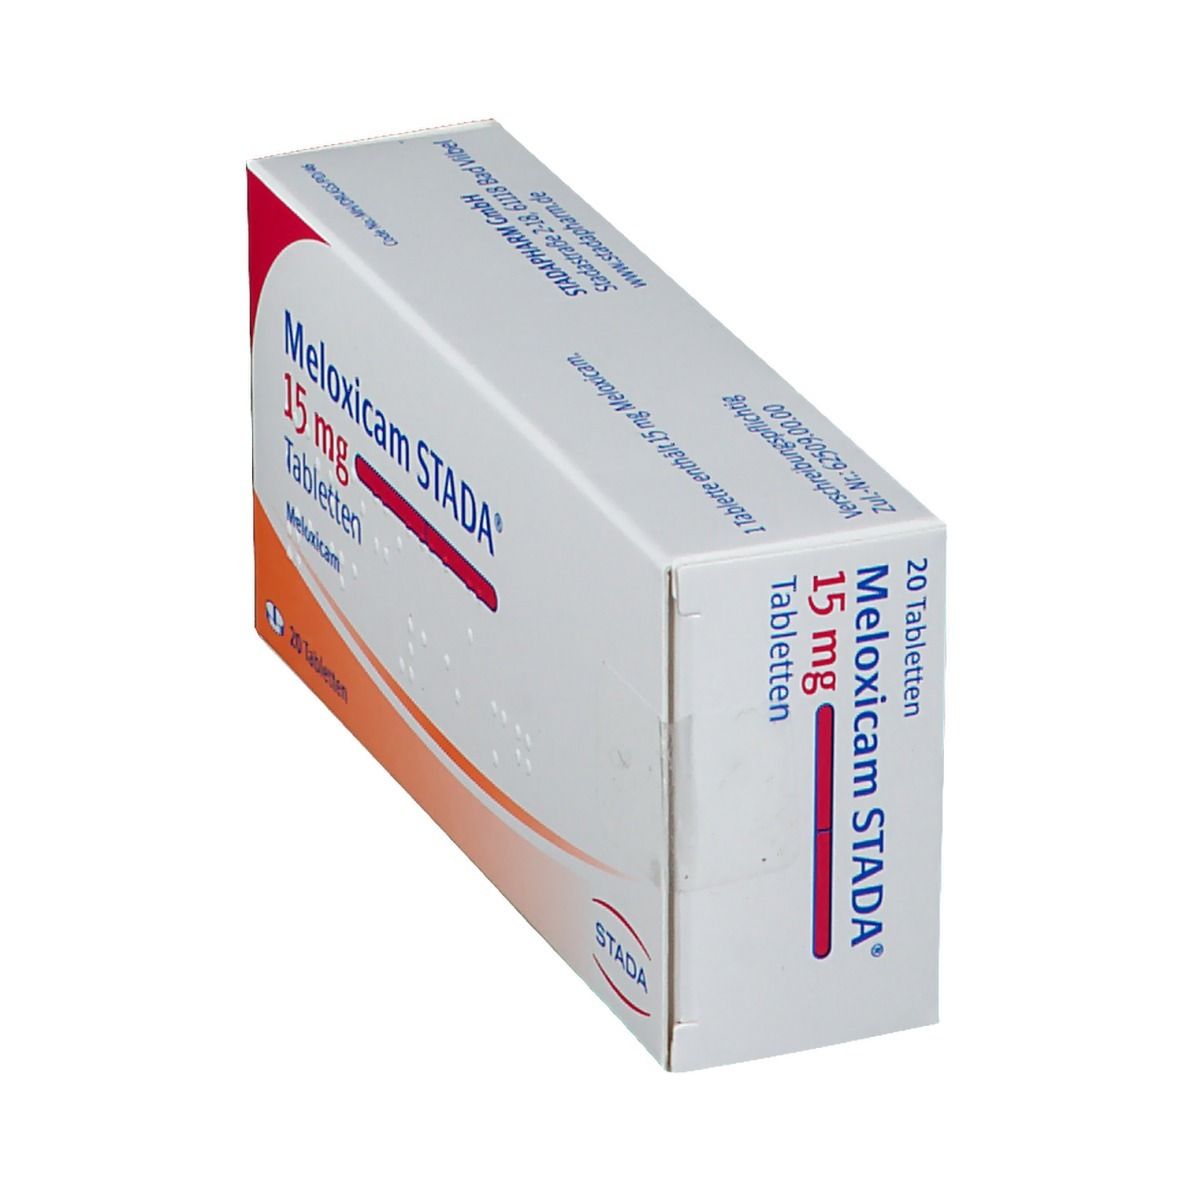 Meloxicam STADA® 15 mg